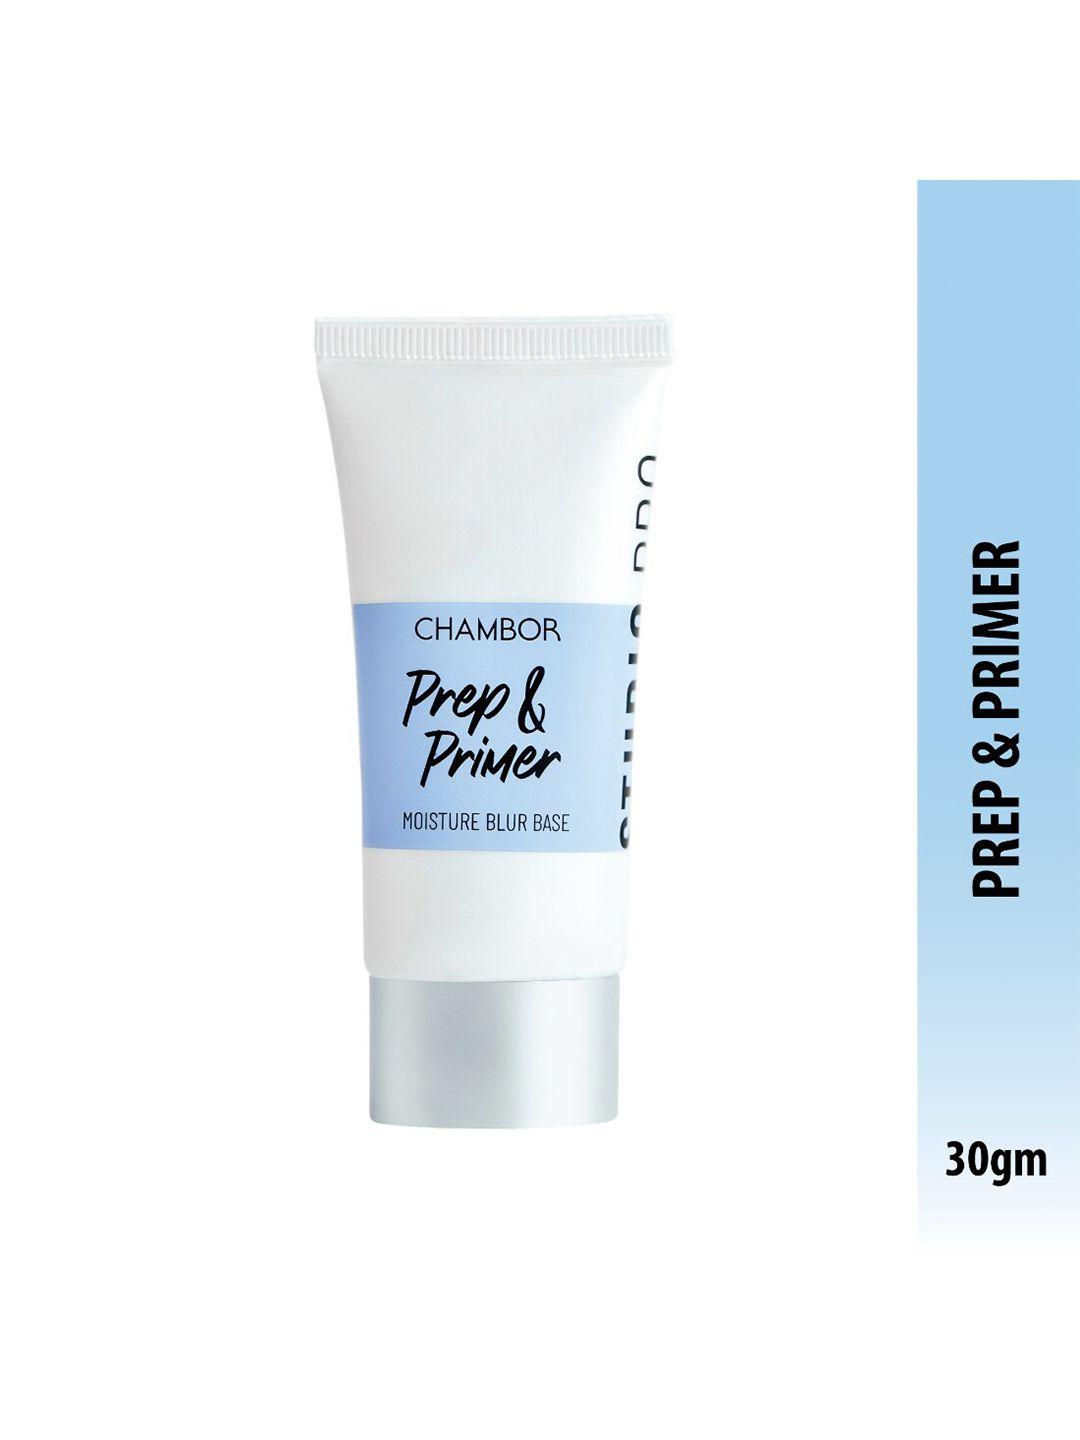 chambor prep & primer mattifying moisturizing primer for poreless skin - 30g